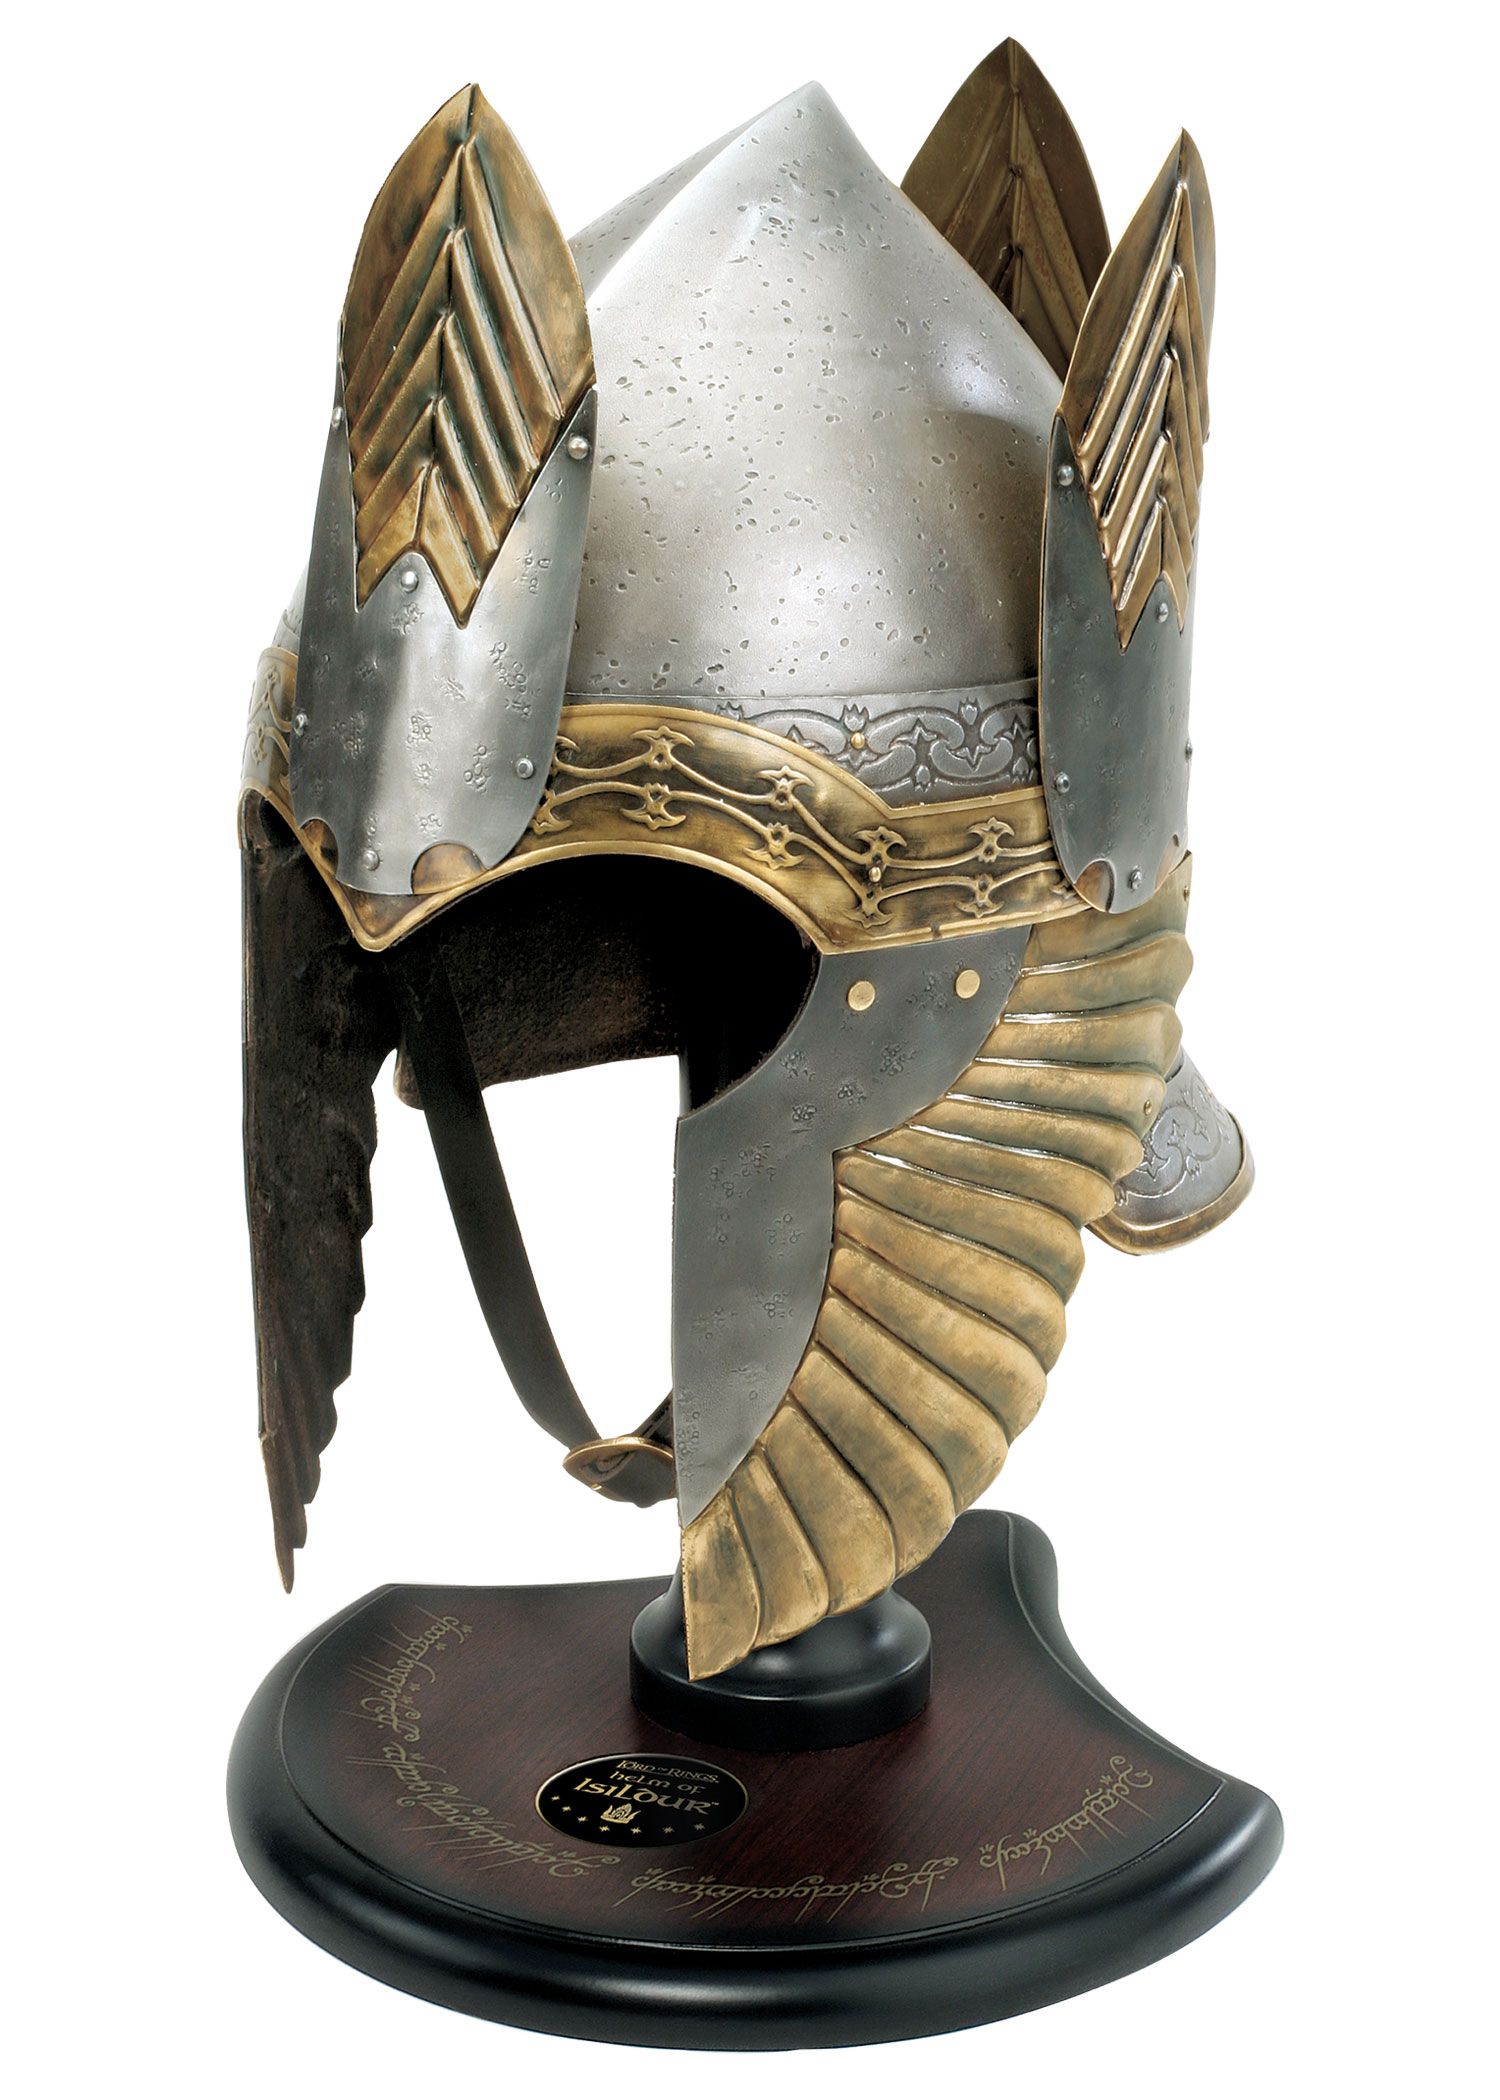 Herr der Ringe - Helm von Isildur mit Ständer